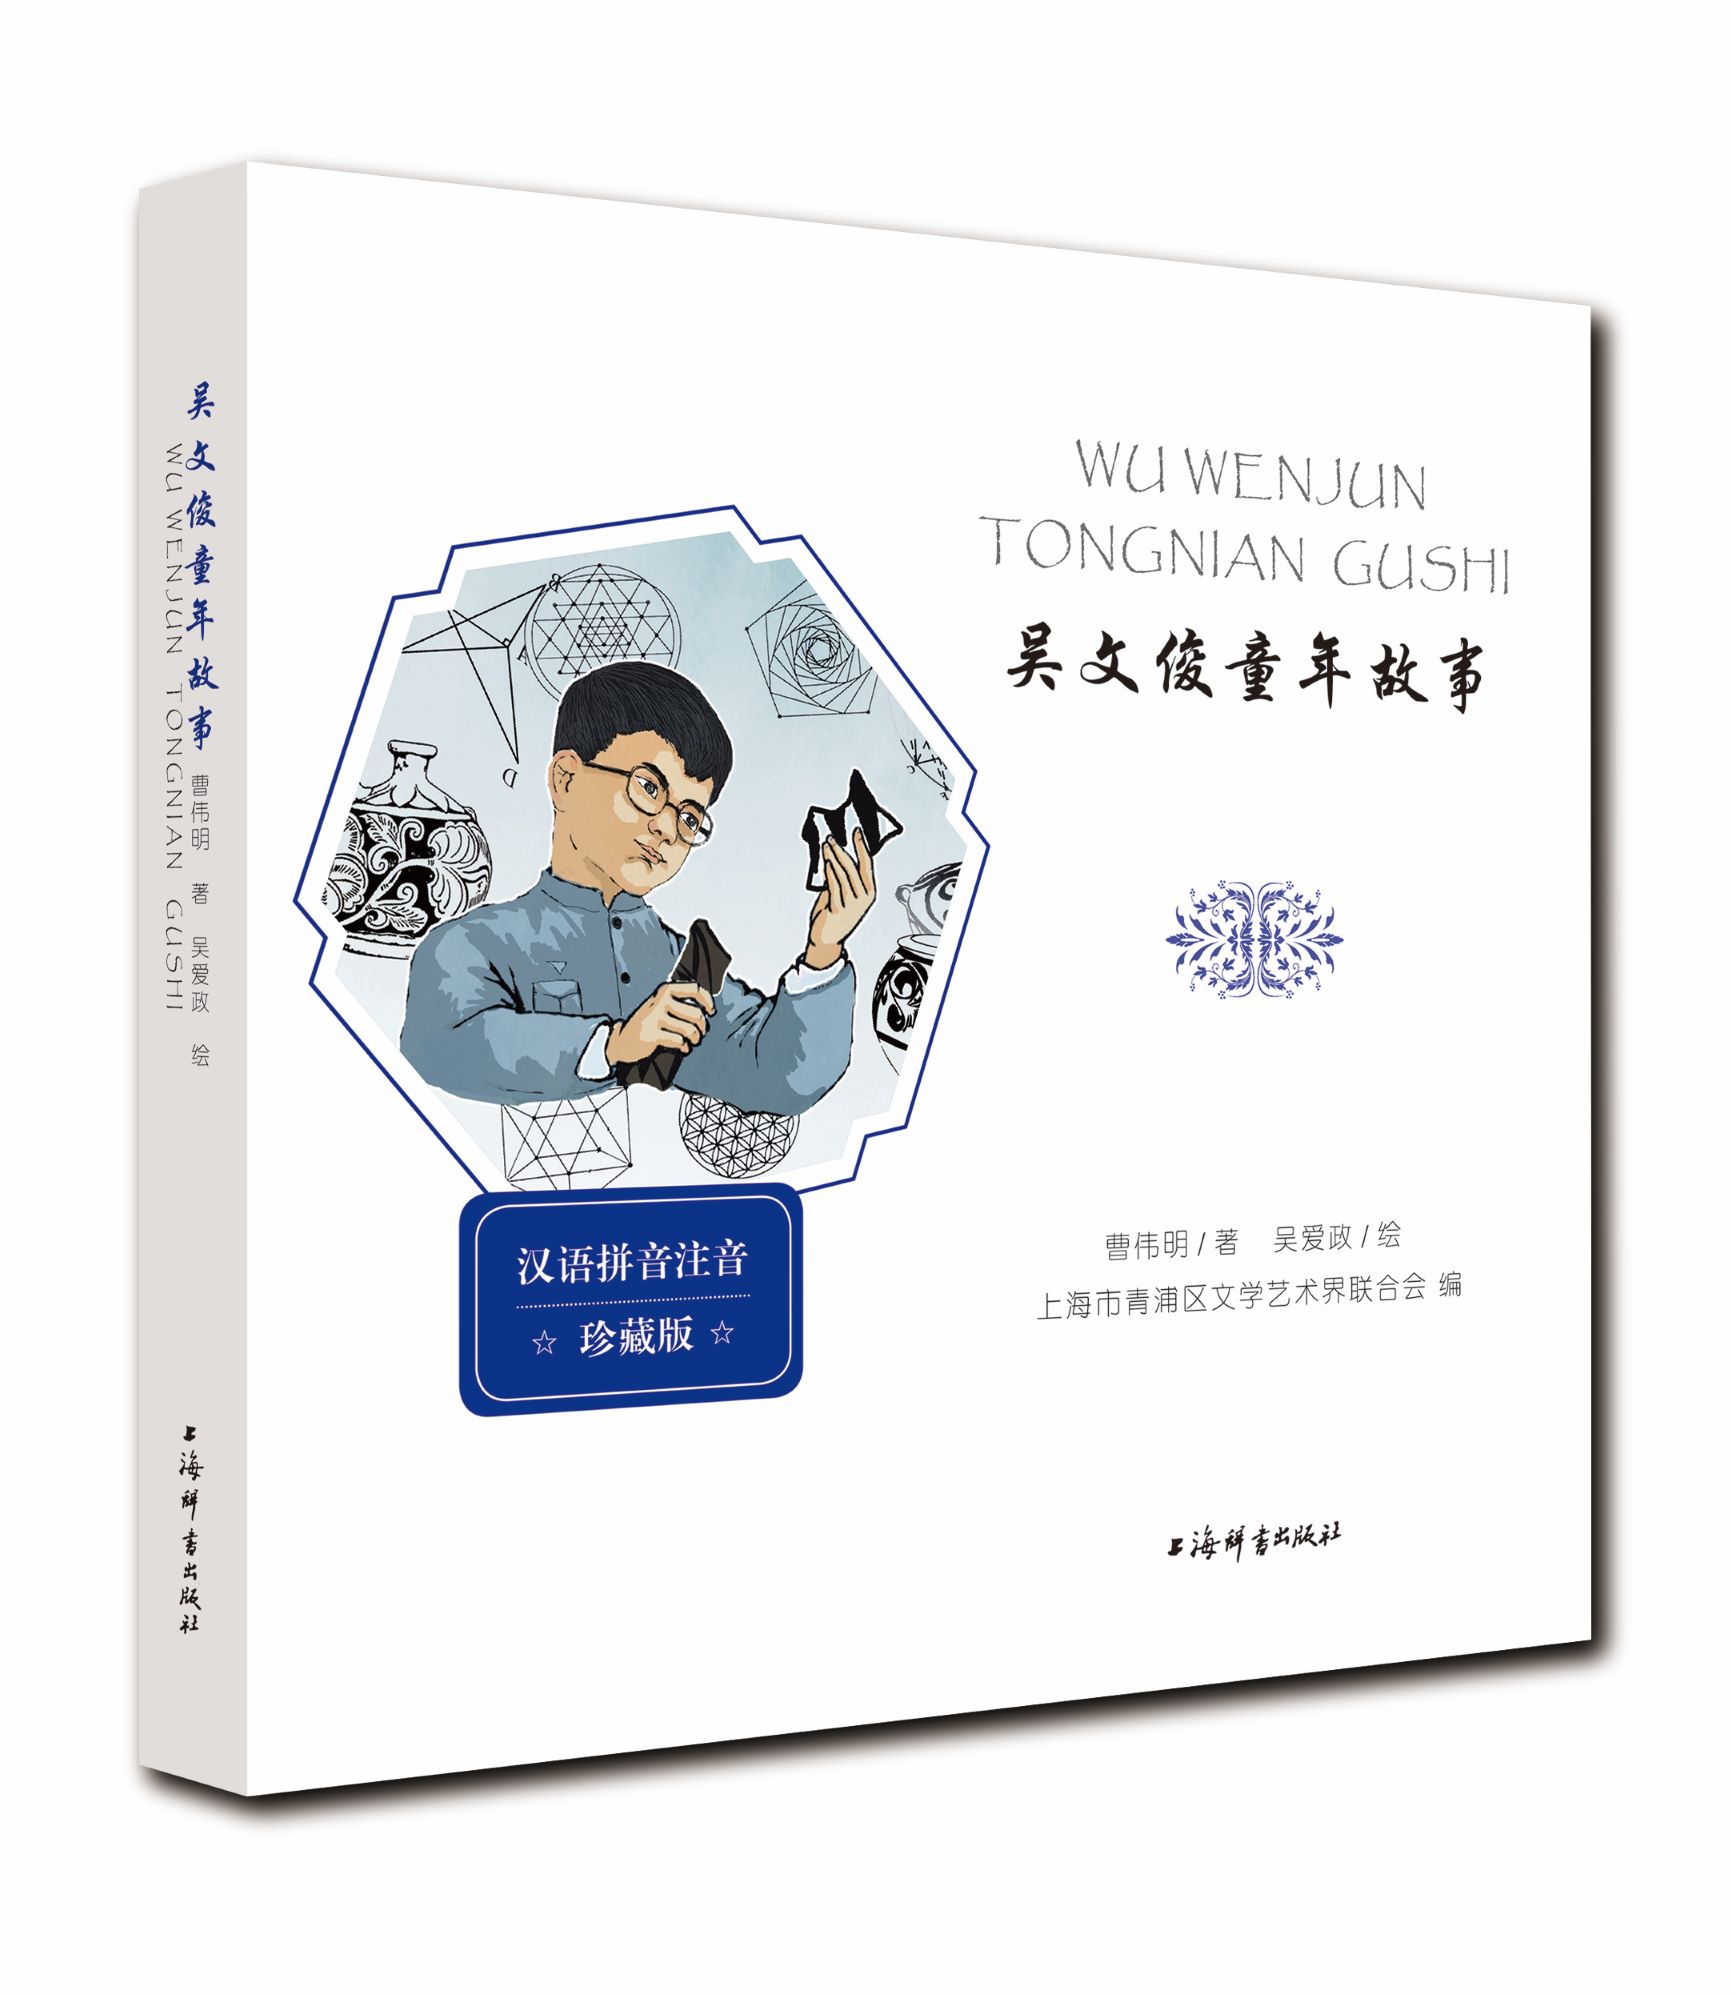 上海辞书出版社最新出品的曹伟明教授著作《吴文俊童年故事》